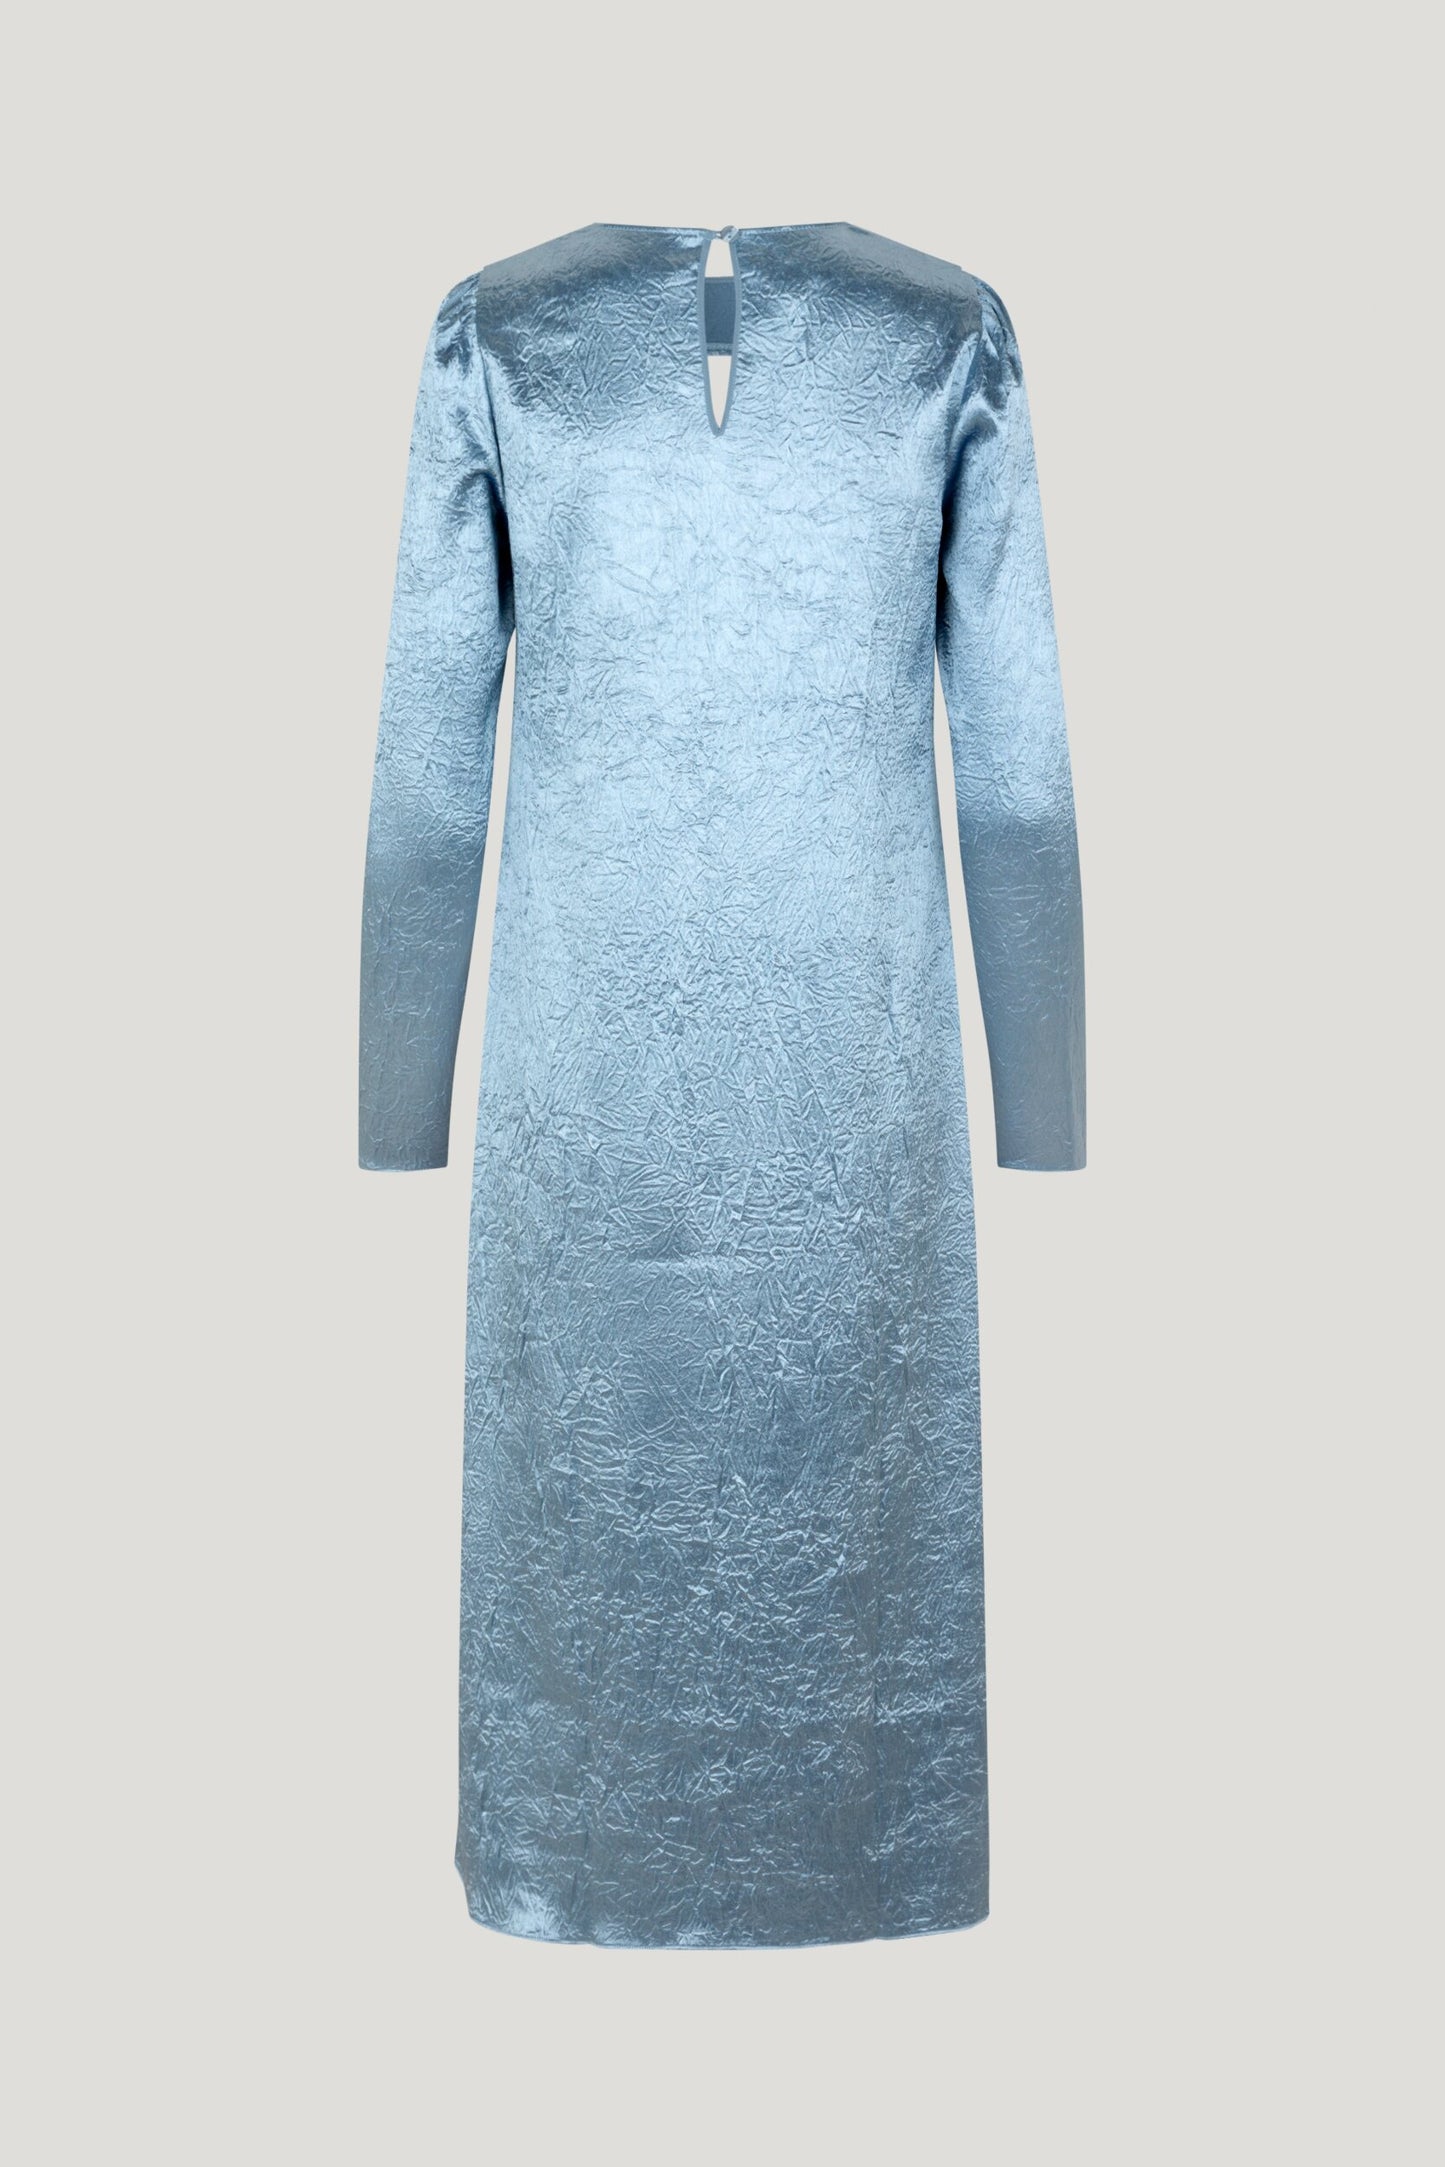 Aneto Dress - Blue Fog by Baum und Pferdgarten